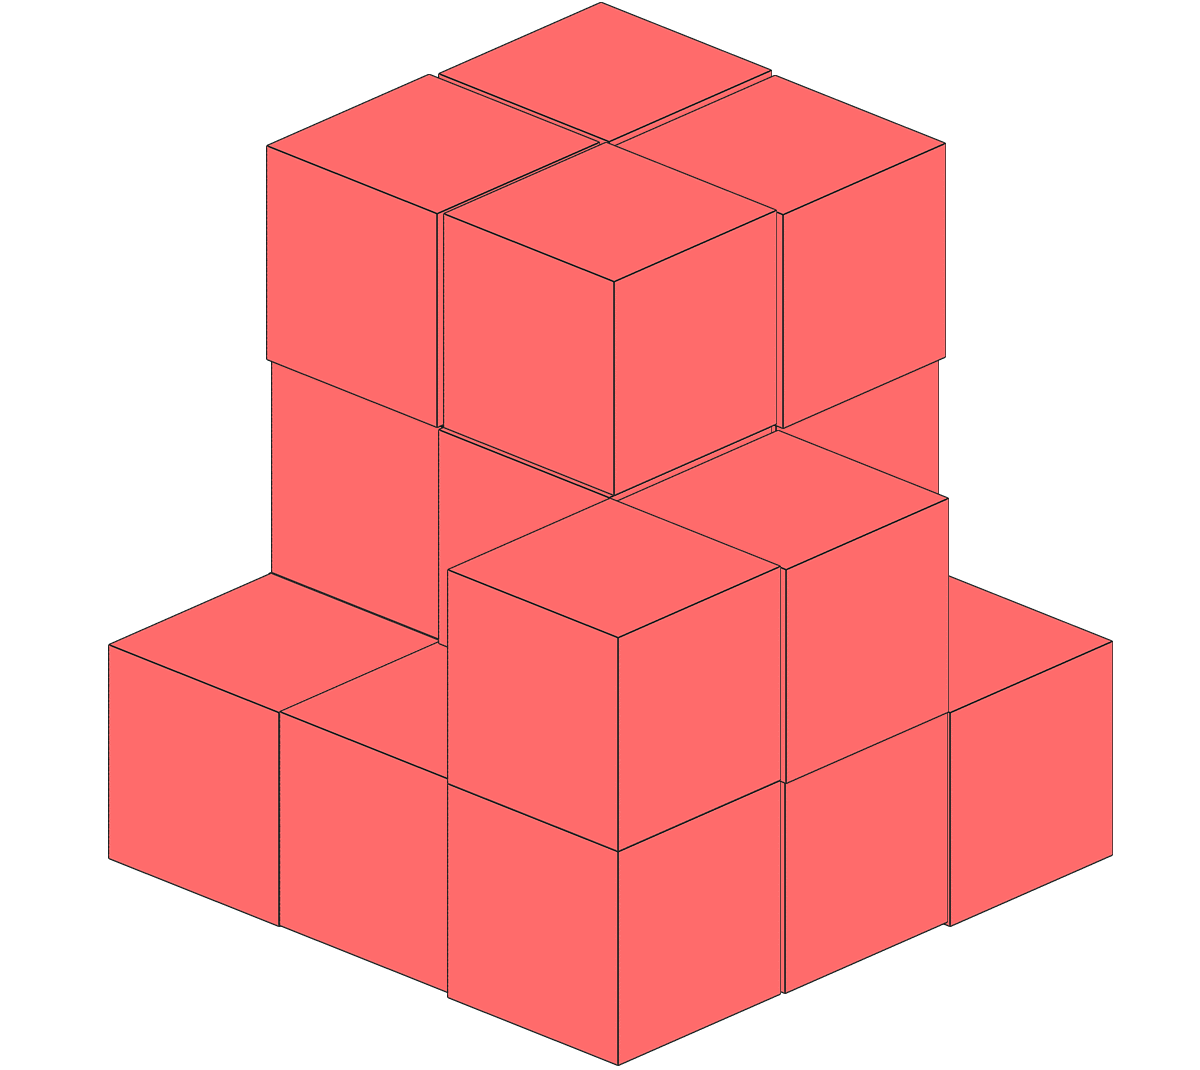 立方体のブロック19個を使って作った形